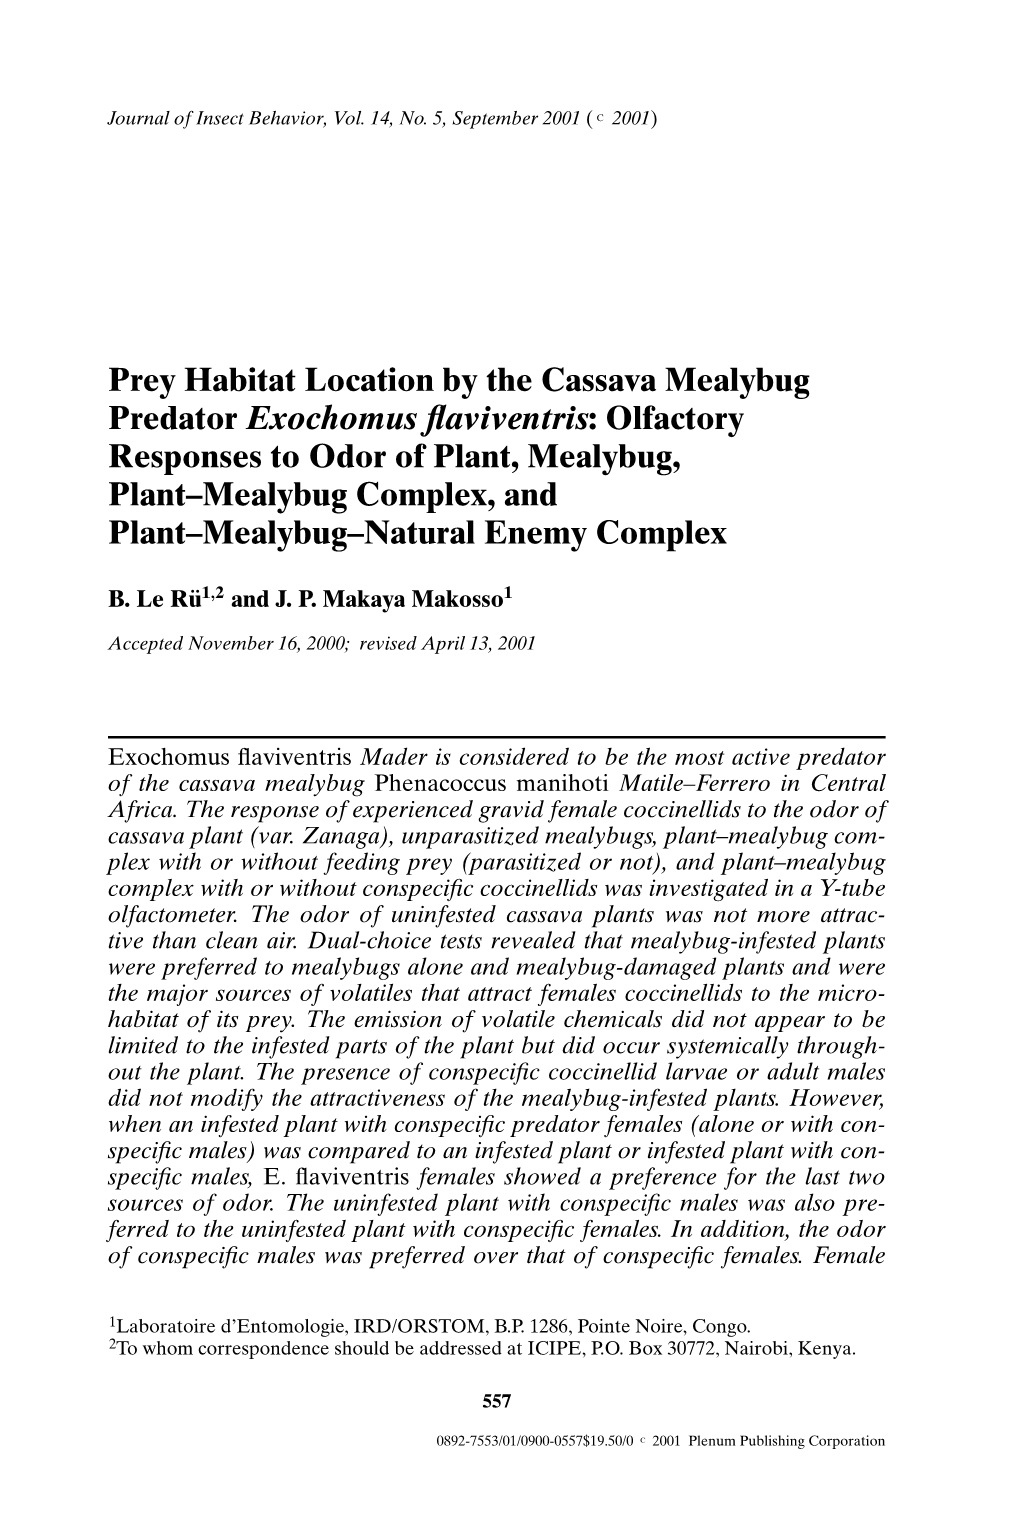 Prey Habitat Location by the Cassava Mealybug Predator Exochomus